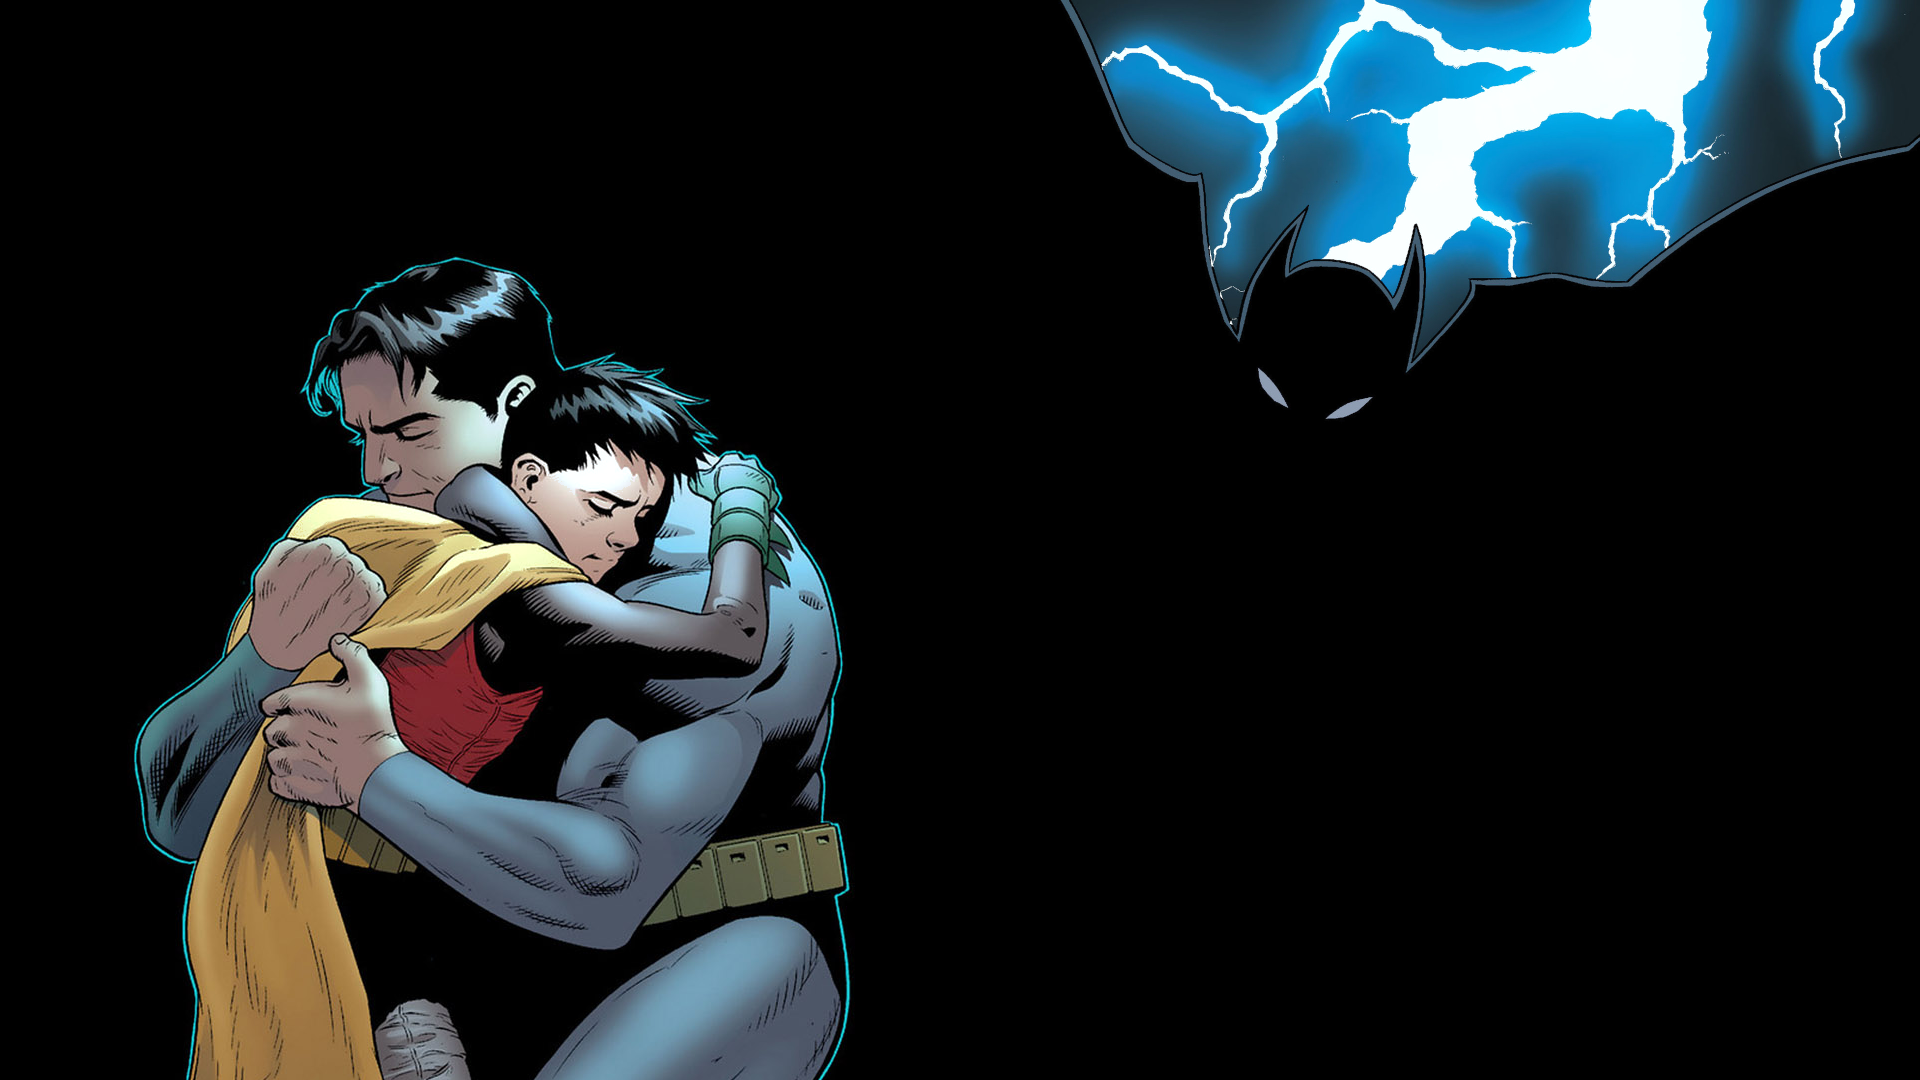 Batman & Robin #8